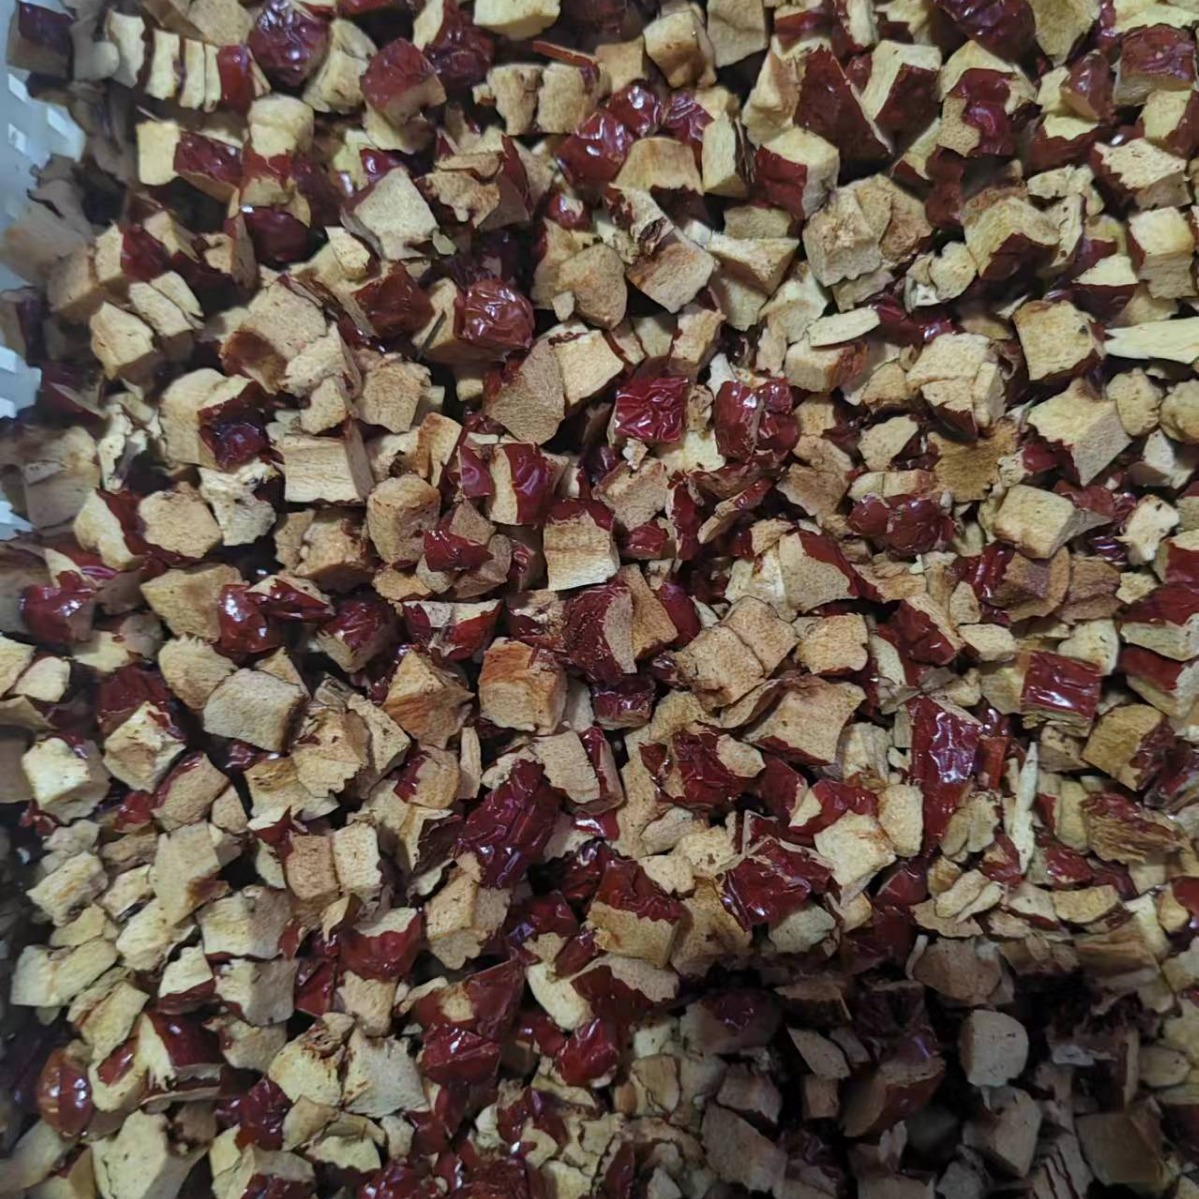 厂家直销 红枣粉 枣颗粒 新疆红枣 4-6毫米 7-8毫米